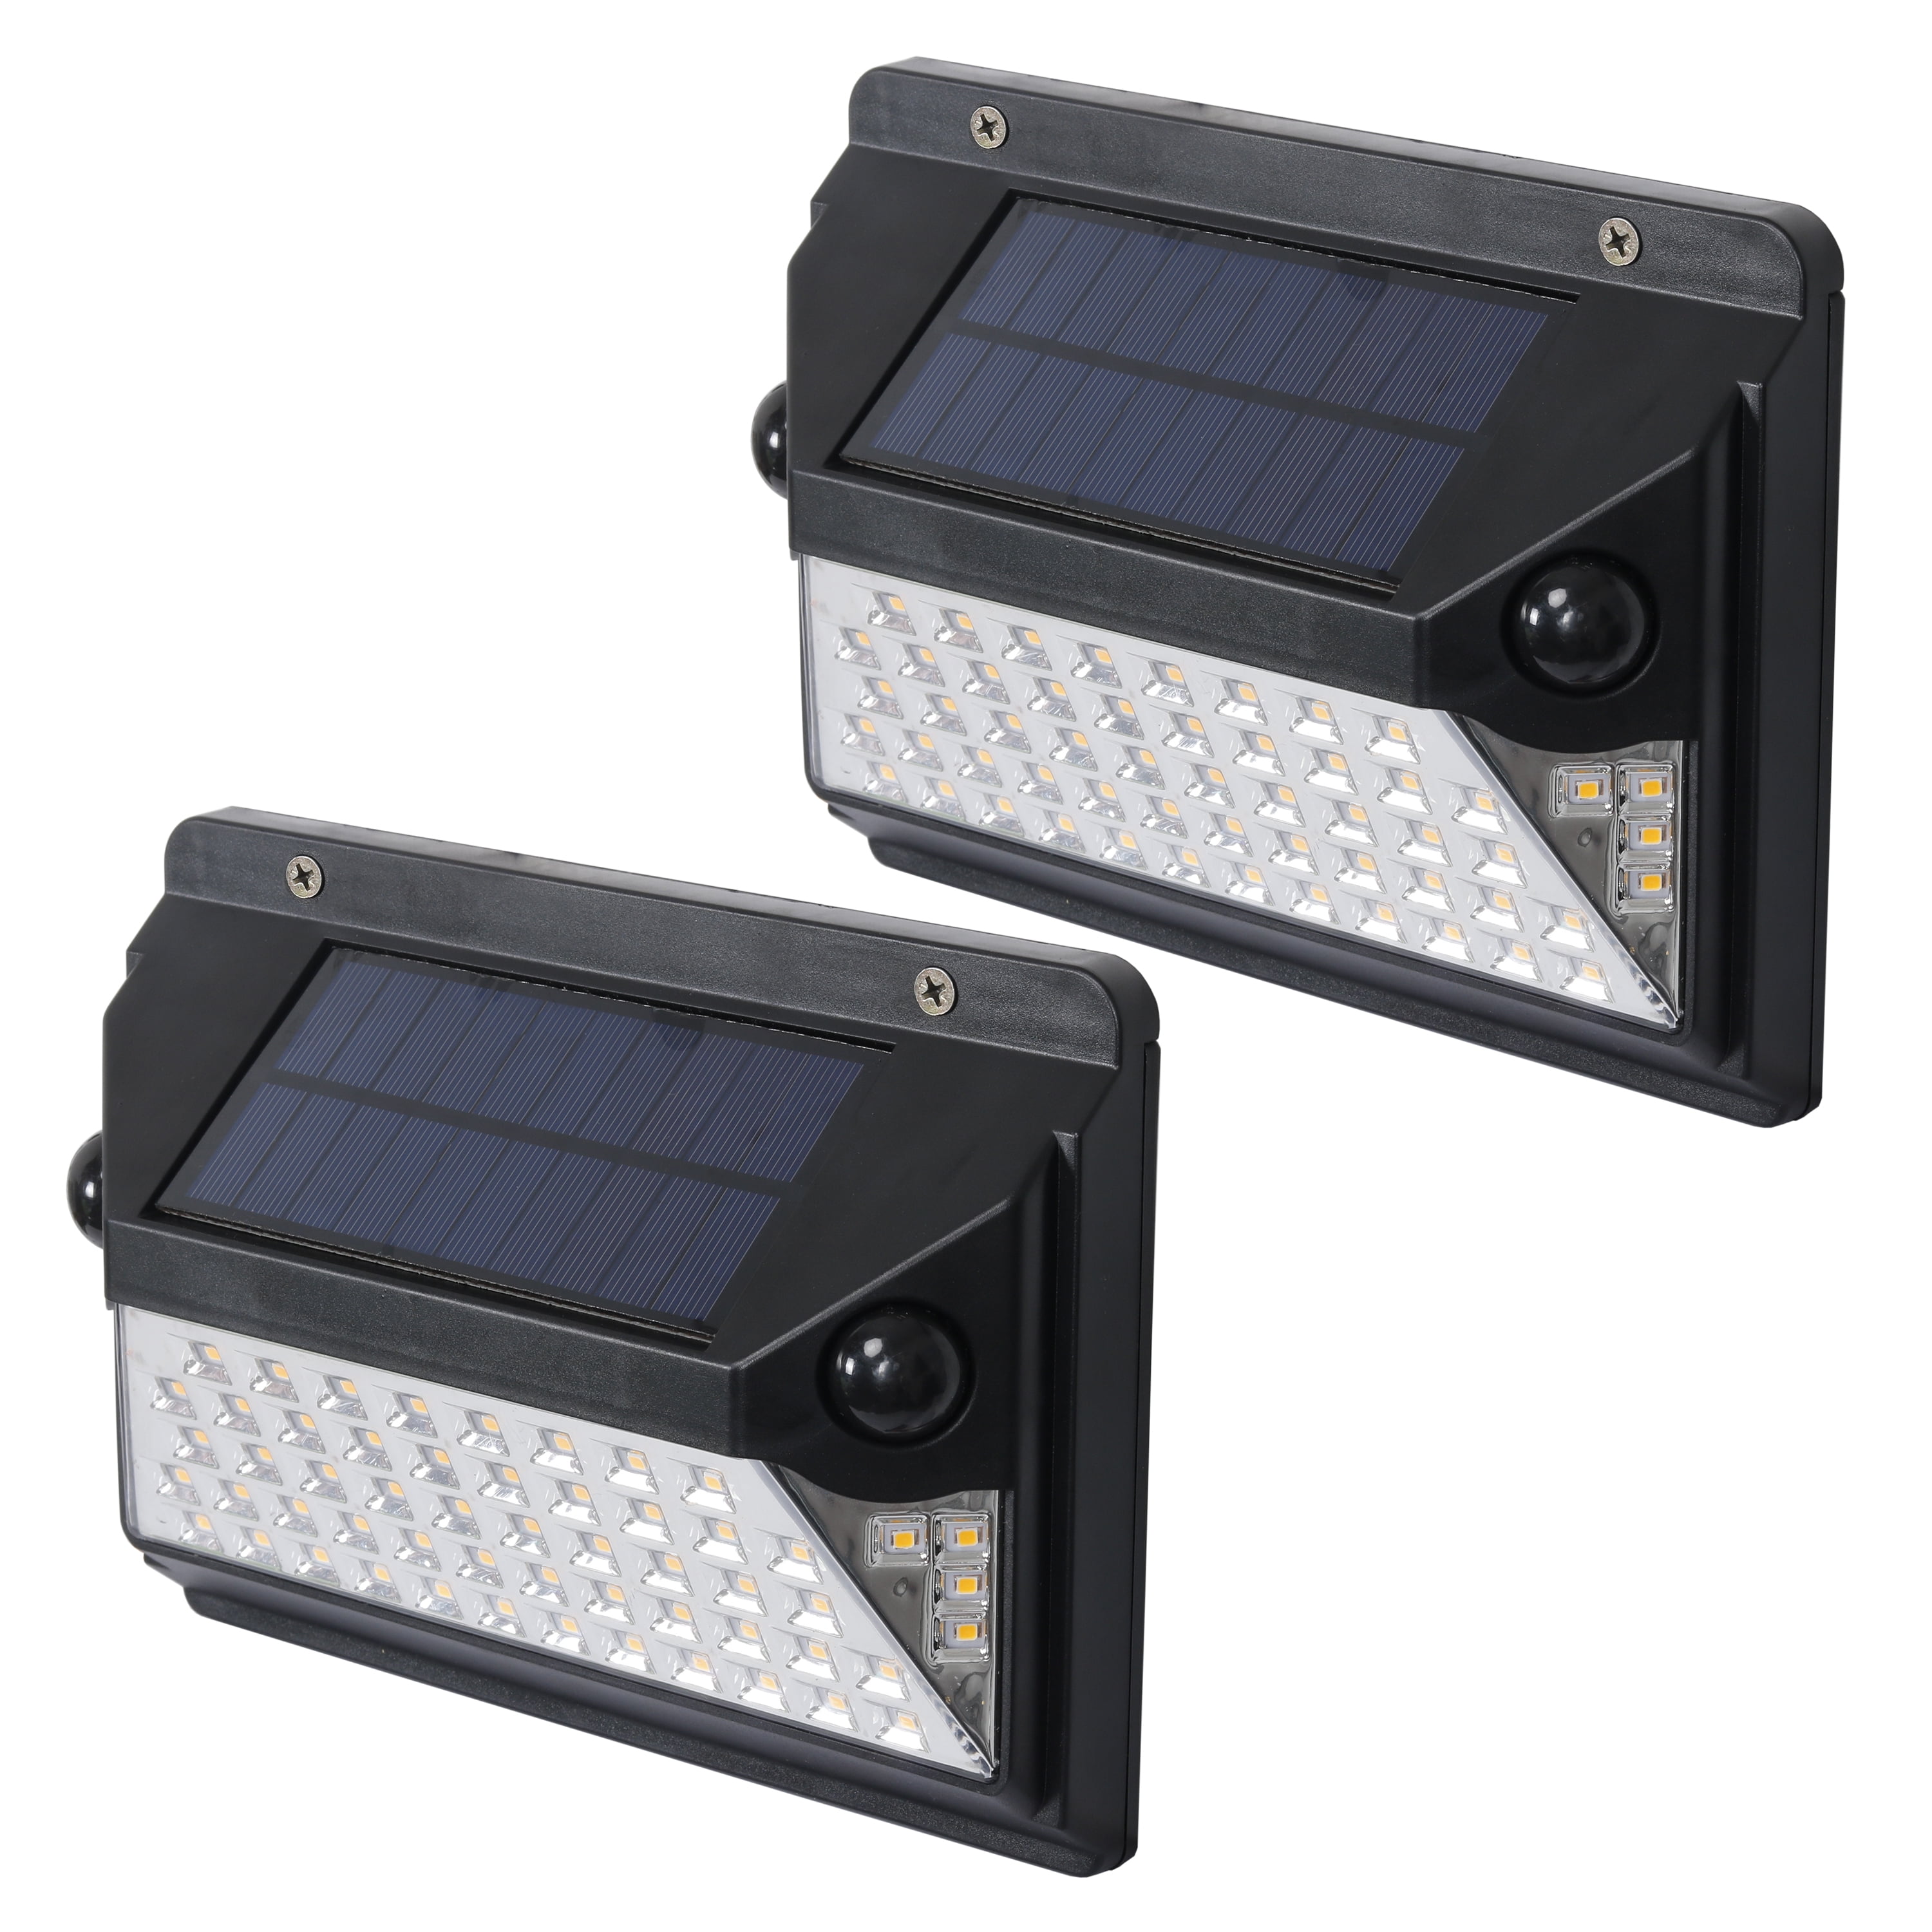 Outdoor solar motion detector lights